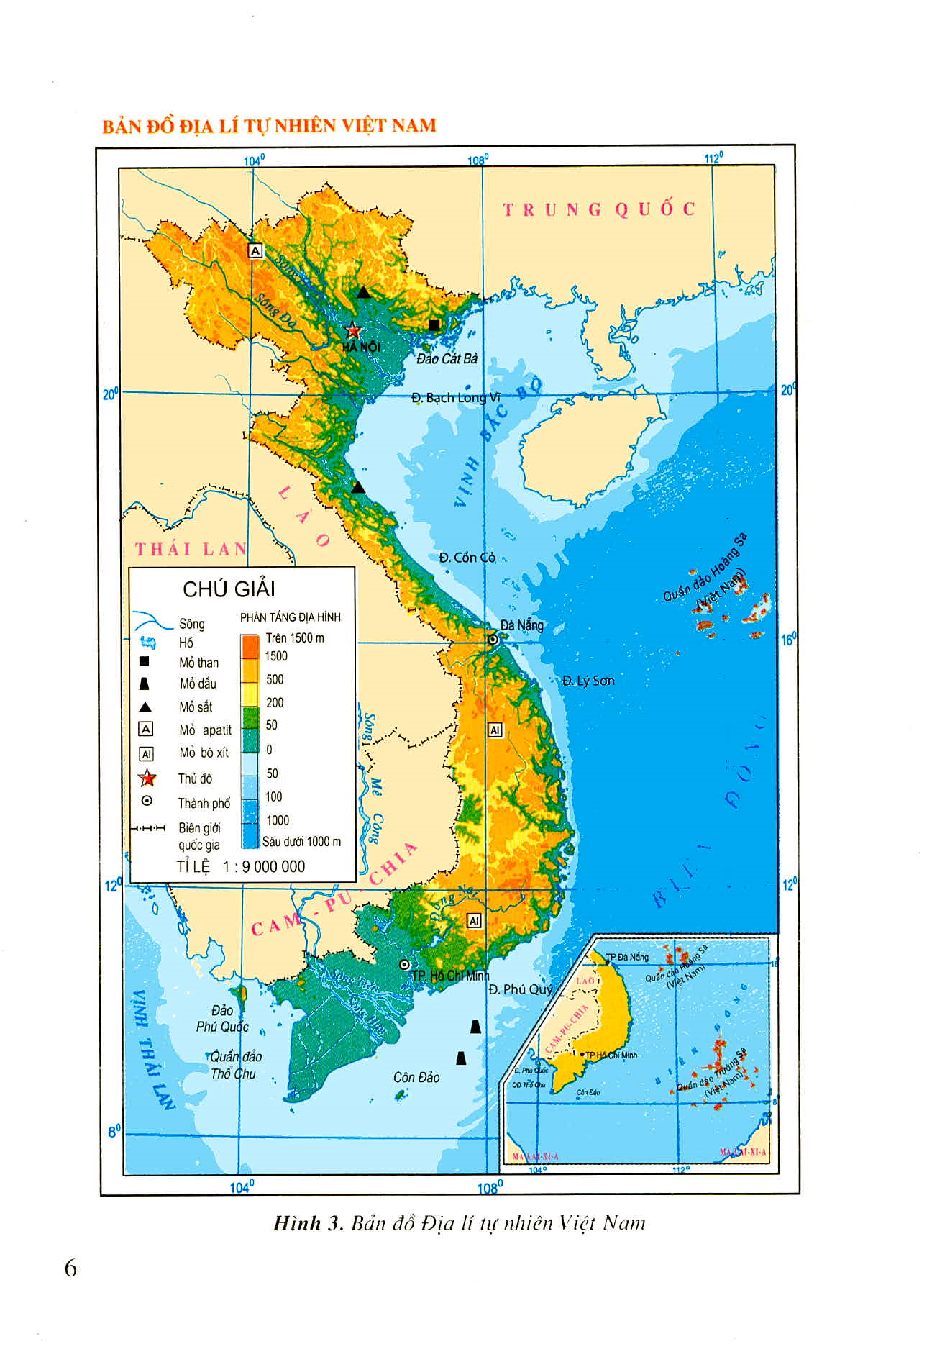 Tự kiểm tra kiến thức địa lý qua Geography Quizizz và tìm hiểu thêm về Việt Nam. Làm trò chơi này để đánh giá trình độ của bạn và làm cho mình thành một chuyên gia địa lý thực sự. Hãy tham gia ngay và thử sức mình!